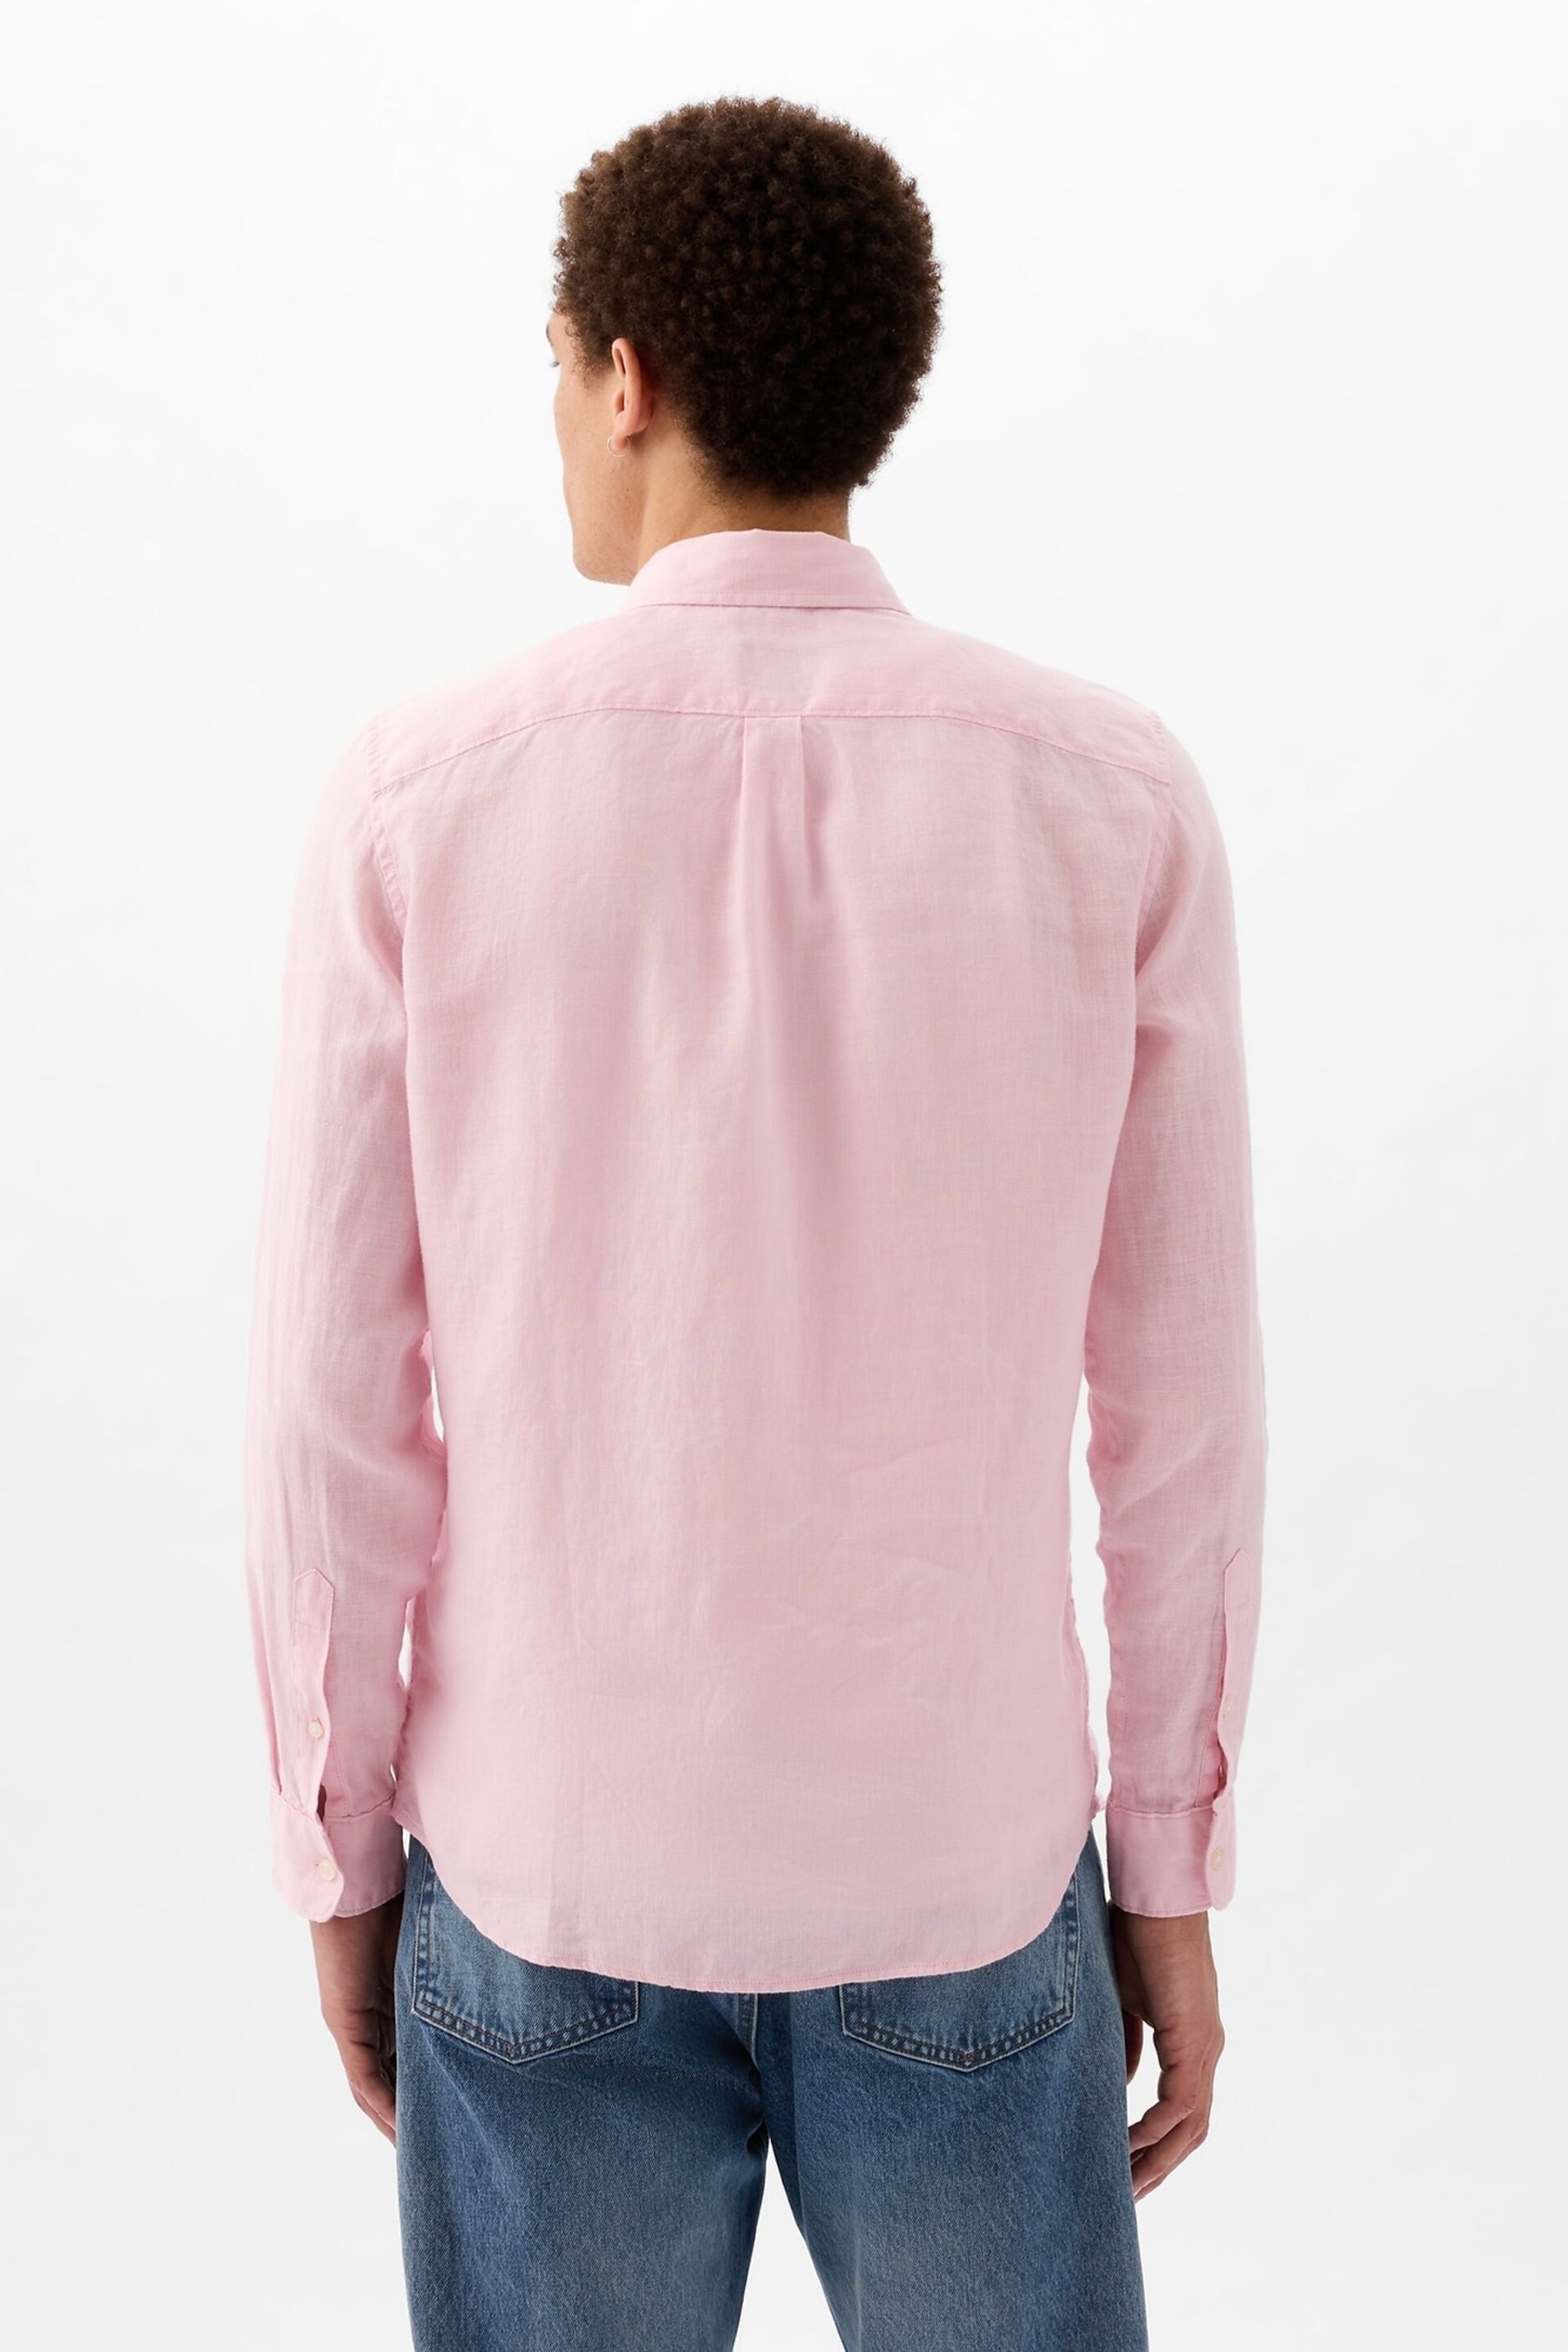 Gap Pink Soft Linen Long Sleeve Shirt - Image 2 of 3